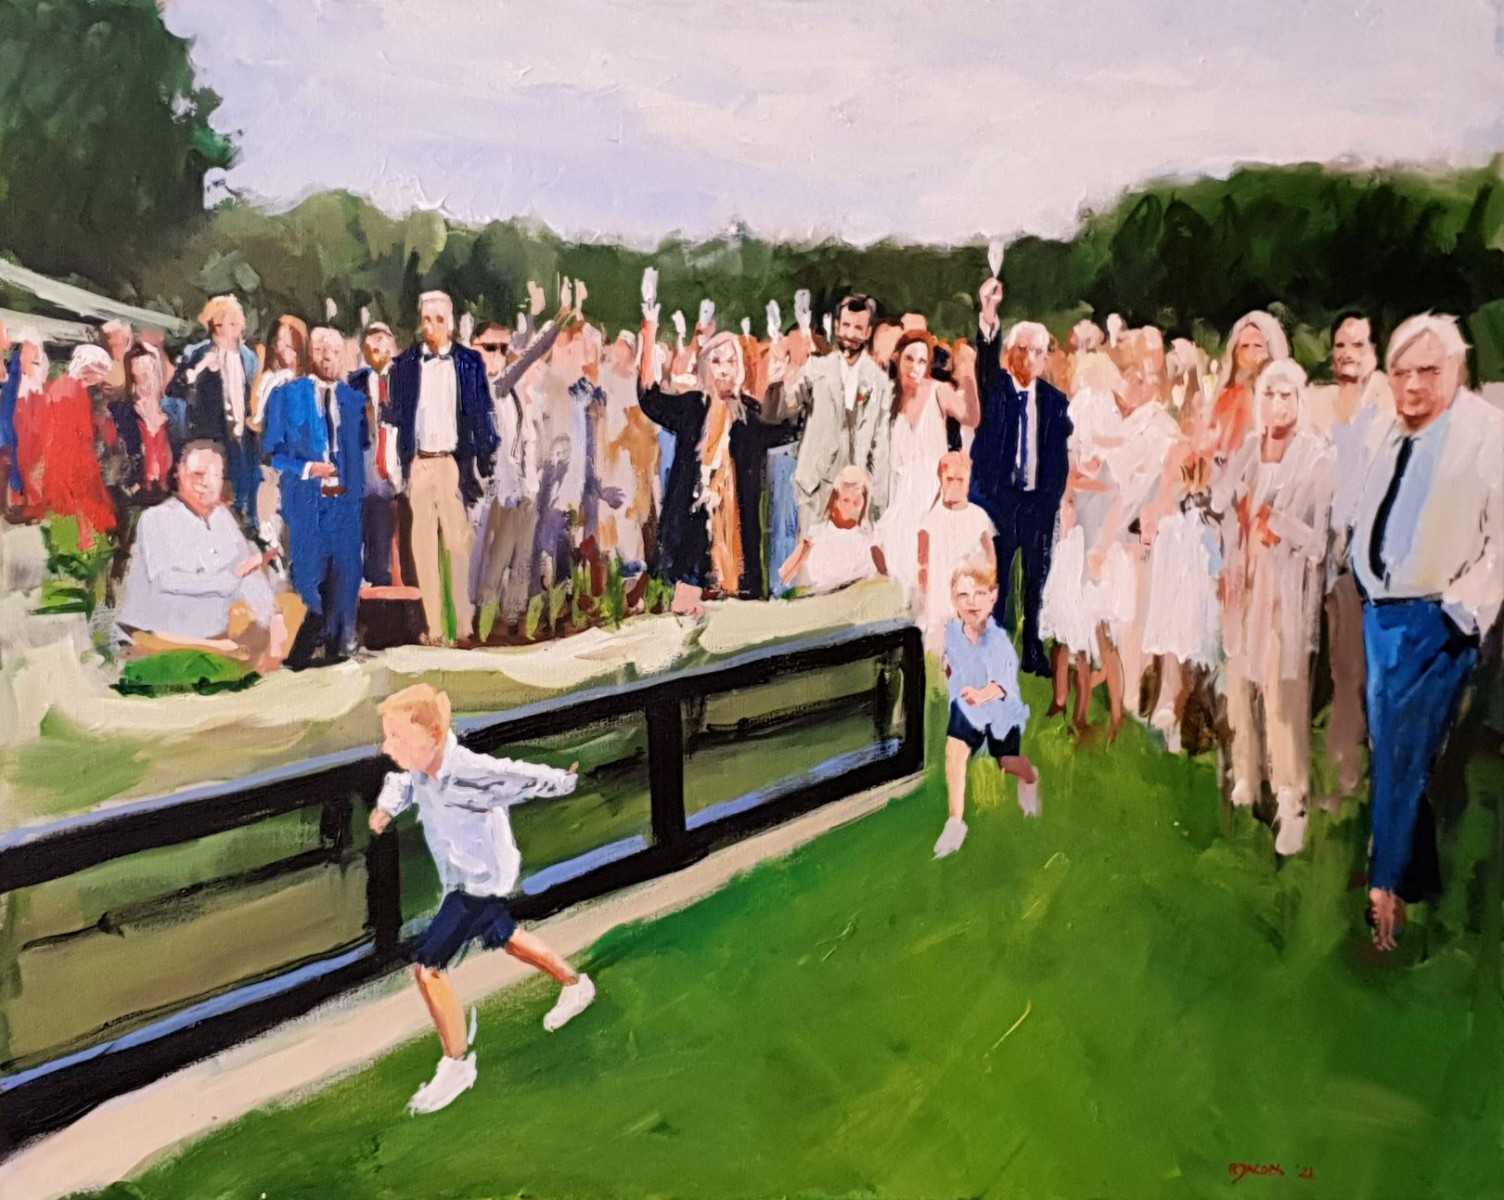 Rob Jacobs schildert doek van 80x100cm tijdens de trouwceremonie in Bergschehoek, Zuid-Holland.